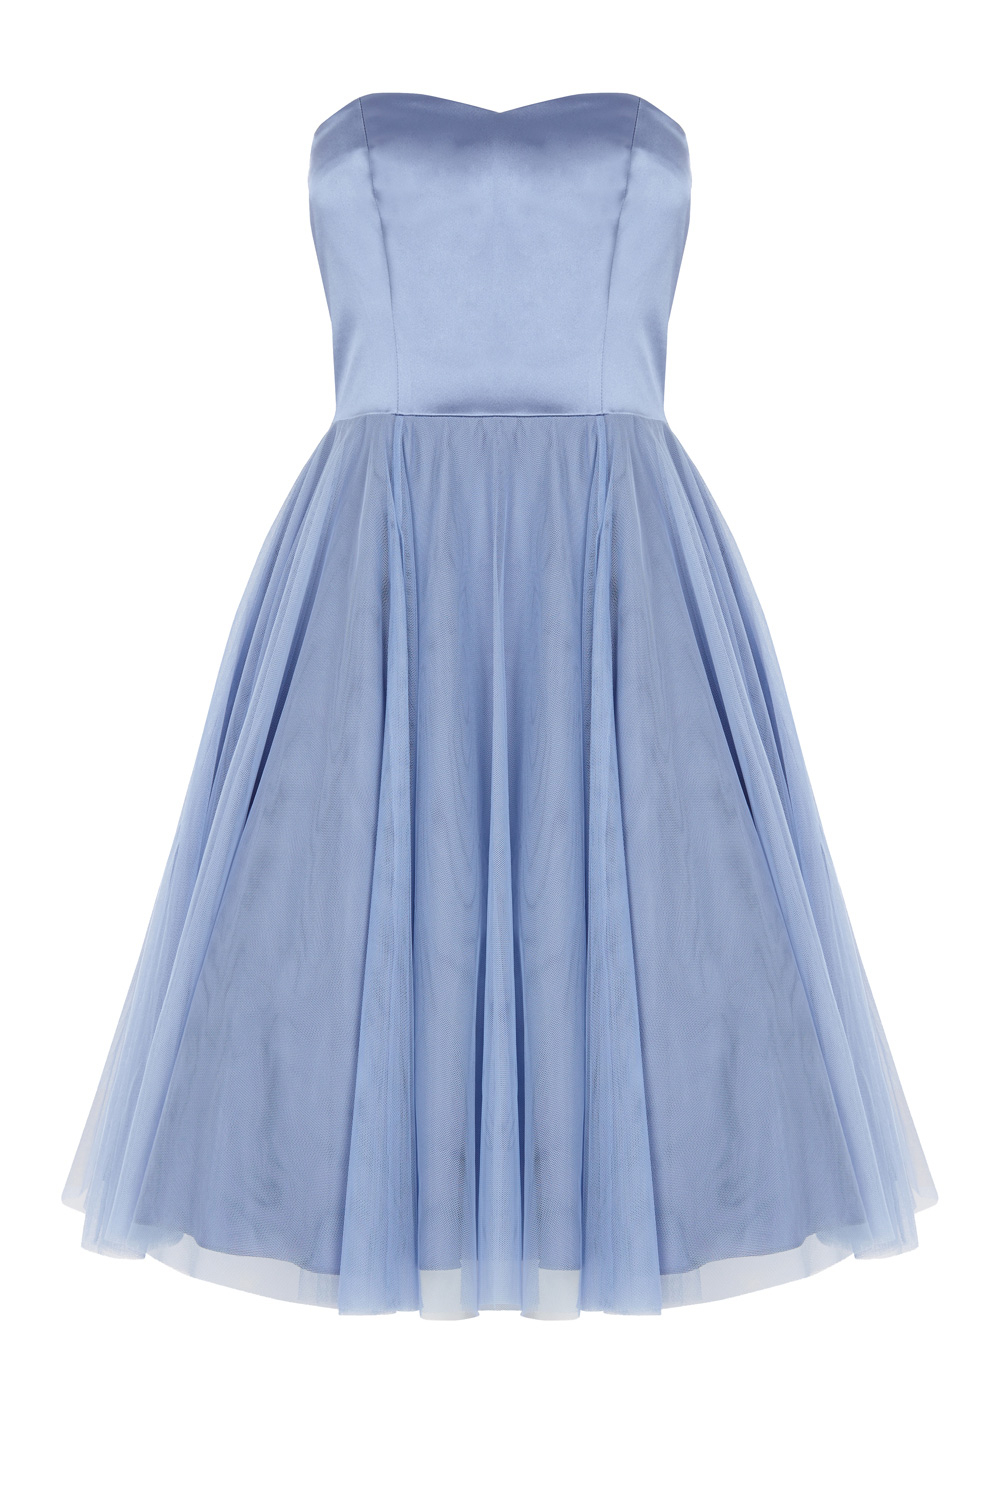 Lyst - Coast Darling Bandeau Dress in Blue